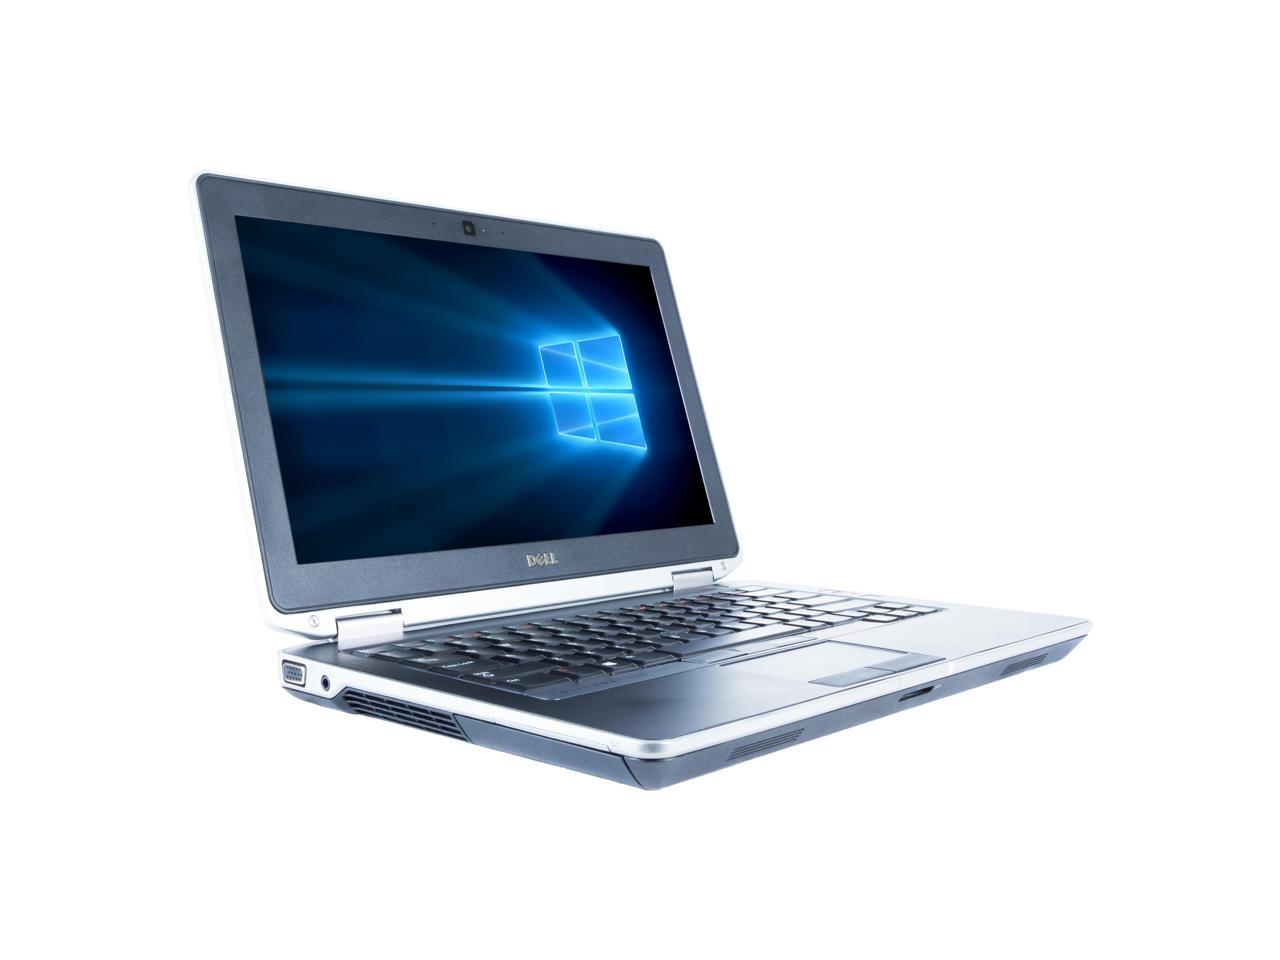 Dell Grade A Latitude E6330 13.3" Laptop, Intel Core I5-3320M up to 3.3G, 8G DDR3, 128G SSD, DVD, USB 3.0, VGA, miniHDMI, Windows 10 Pro 64 bits Multi-language(EN/ES)